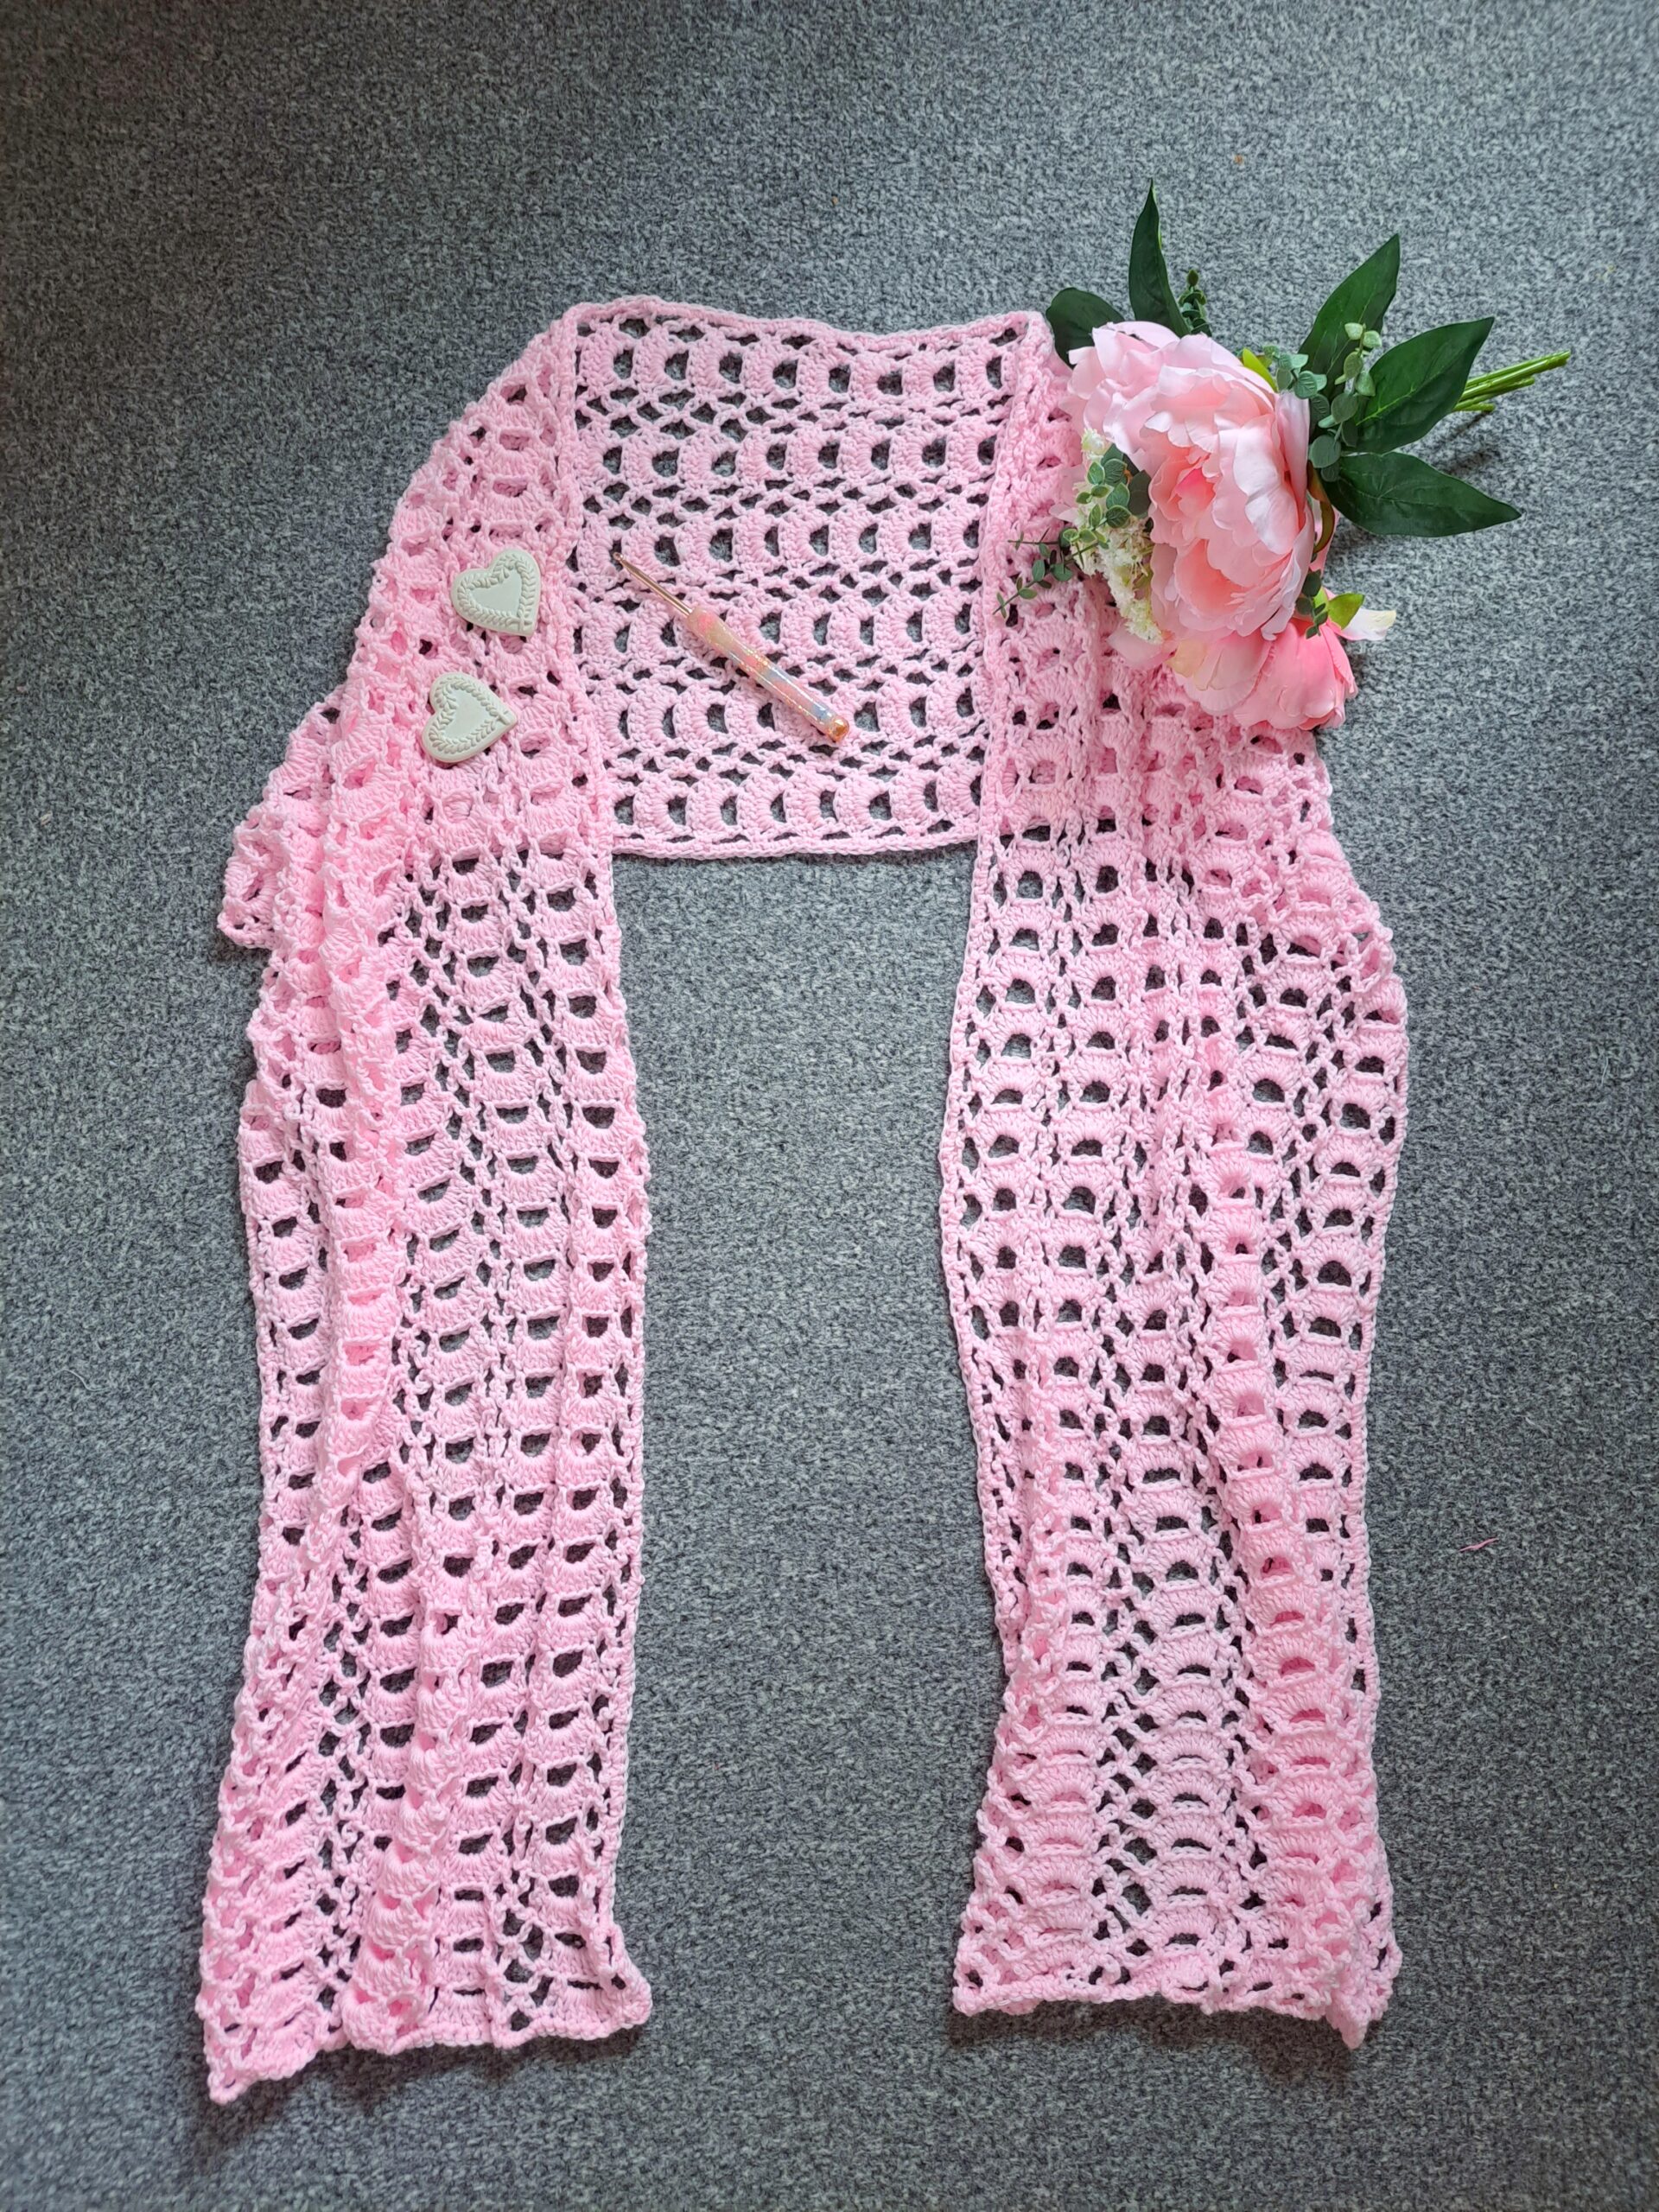 Crochet Edwardian Era Shawl Free Pattern